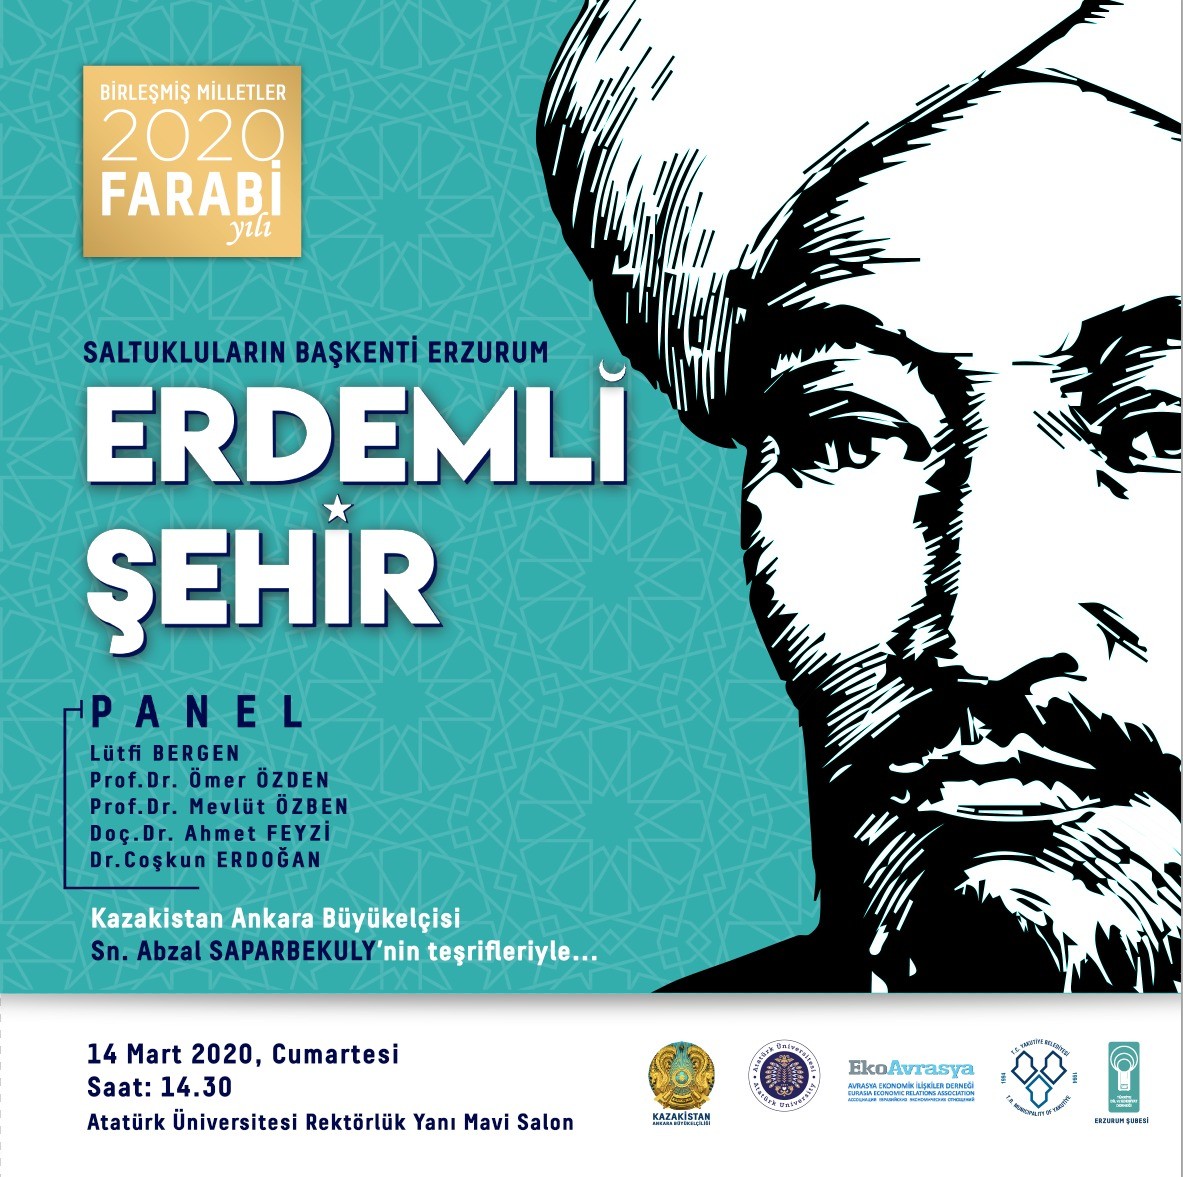 2020 Farabi Yılı’nın açılış programı Erzurum’da yapılacak